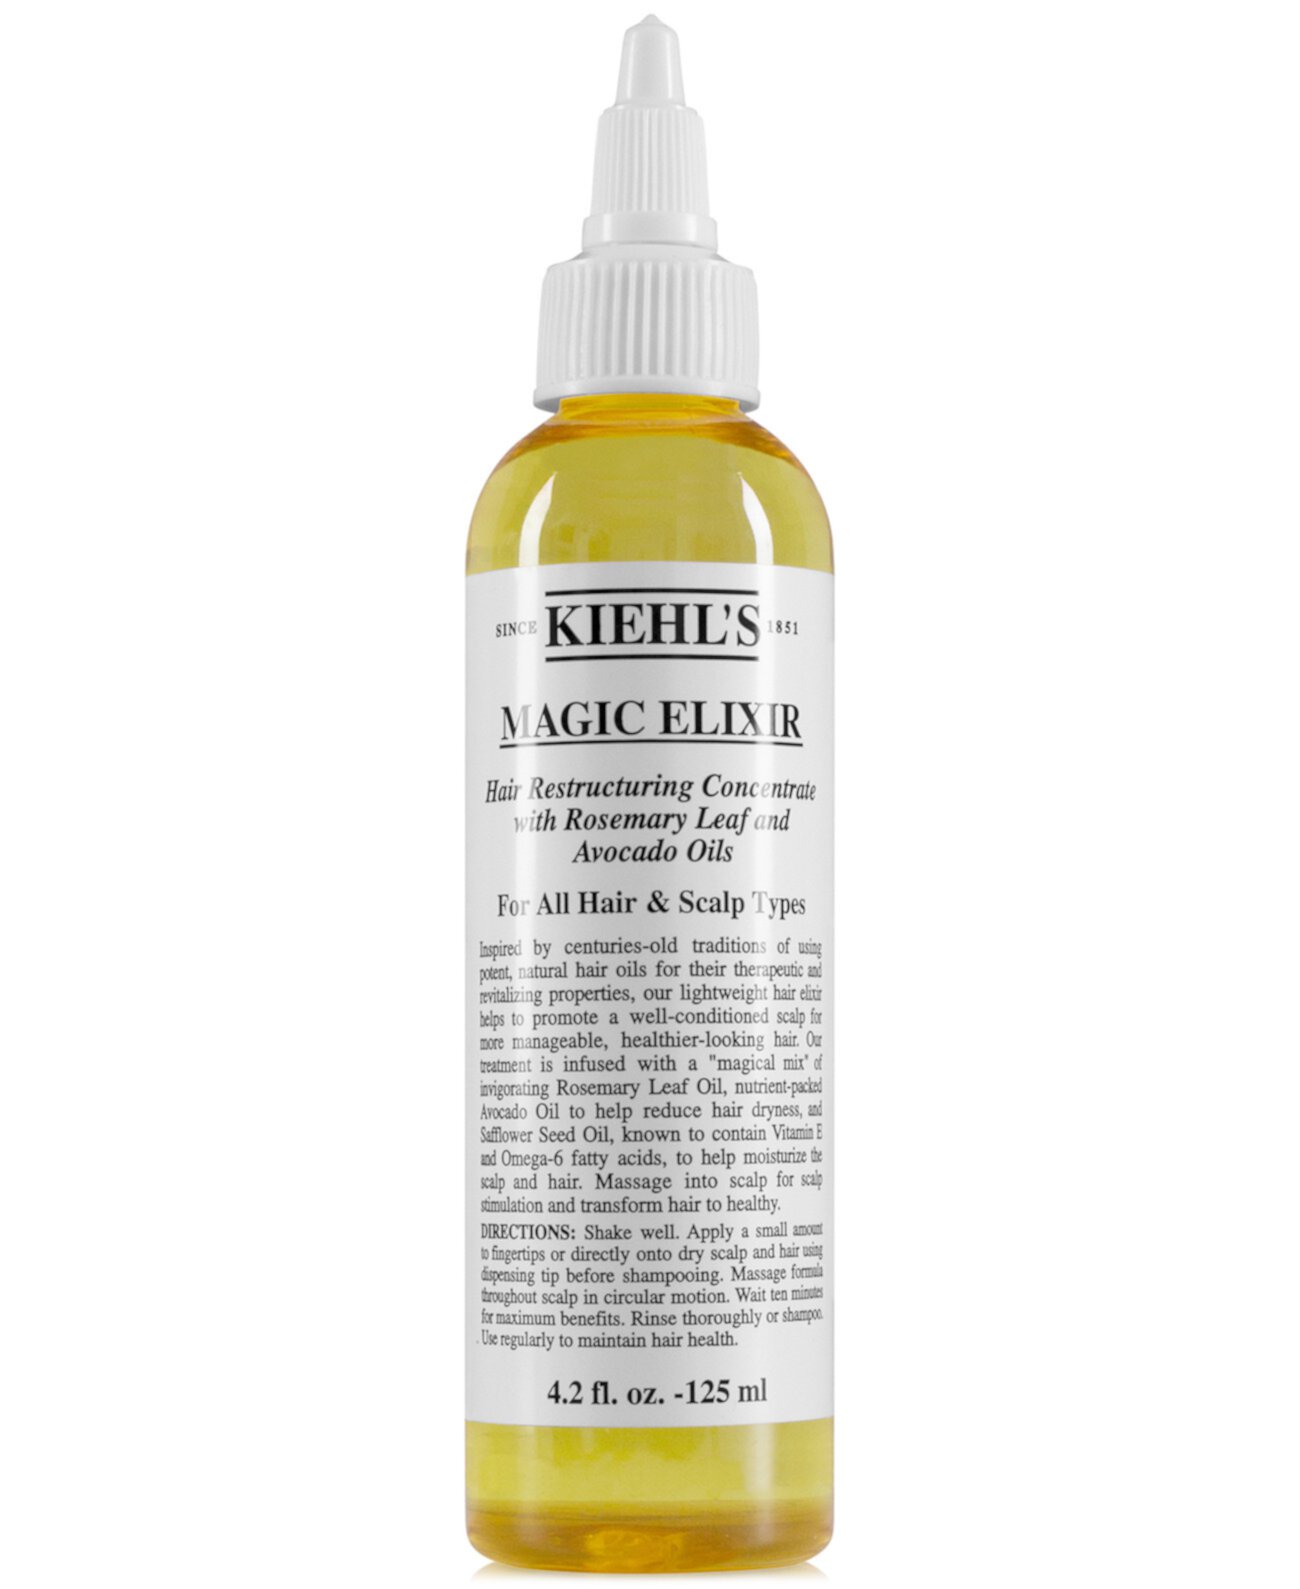 Восстанавливающий концентрат волос Magic Elixir, 4,2 унции. Kiehl's Since 1851